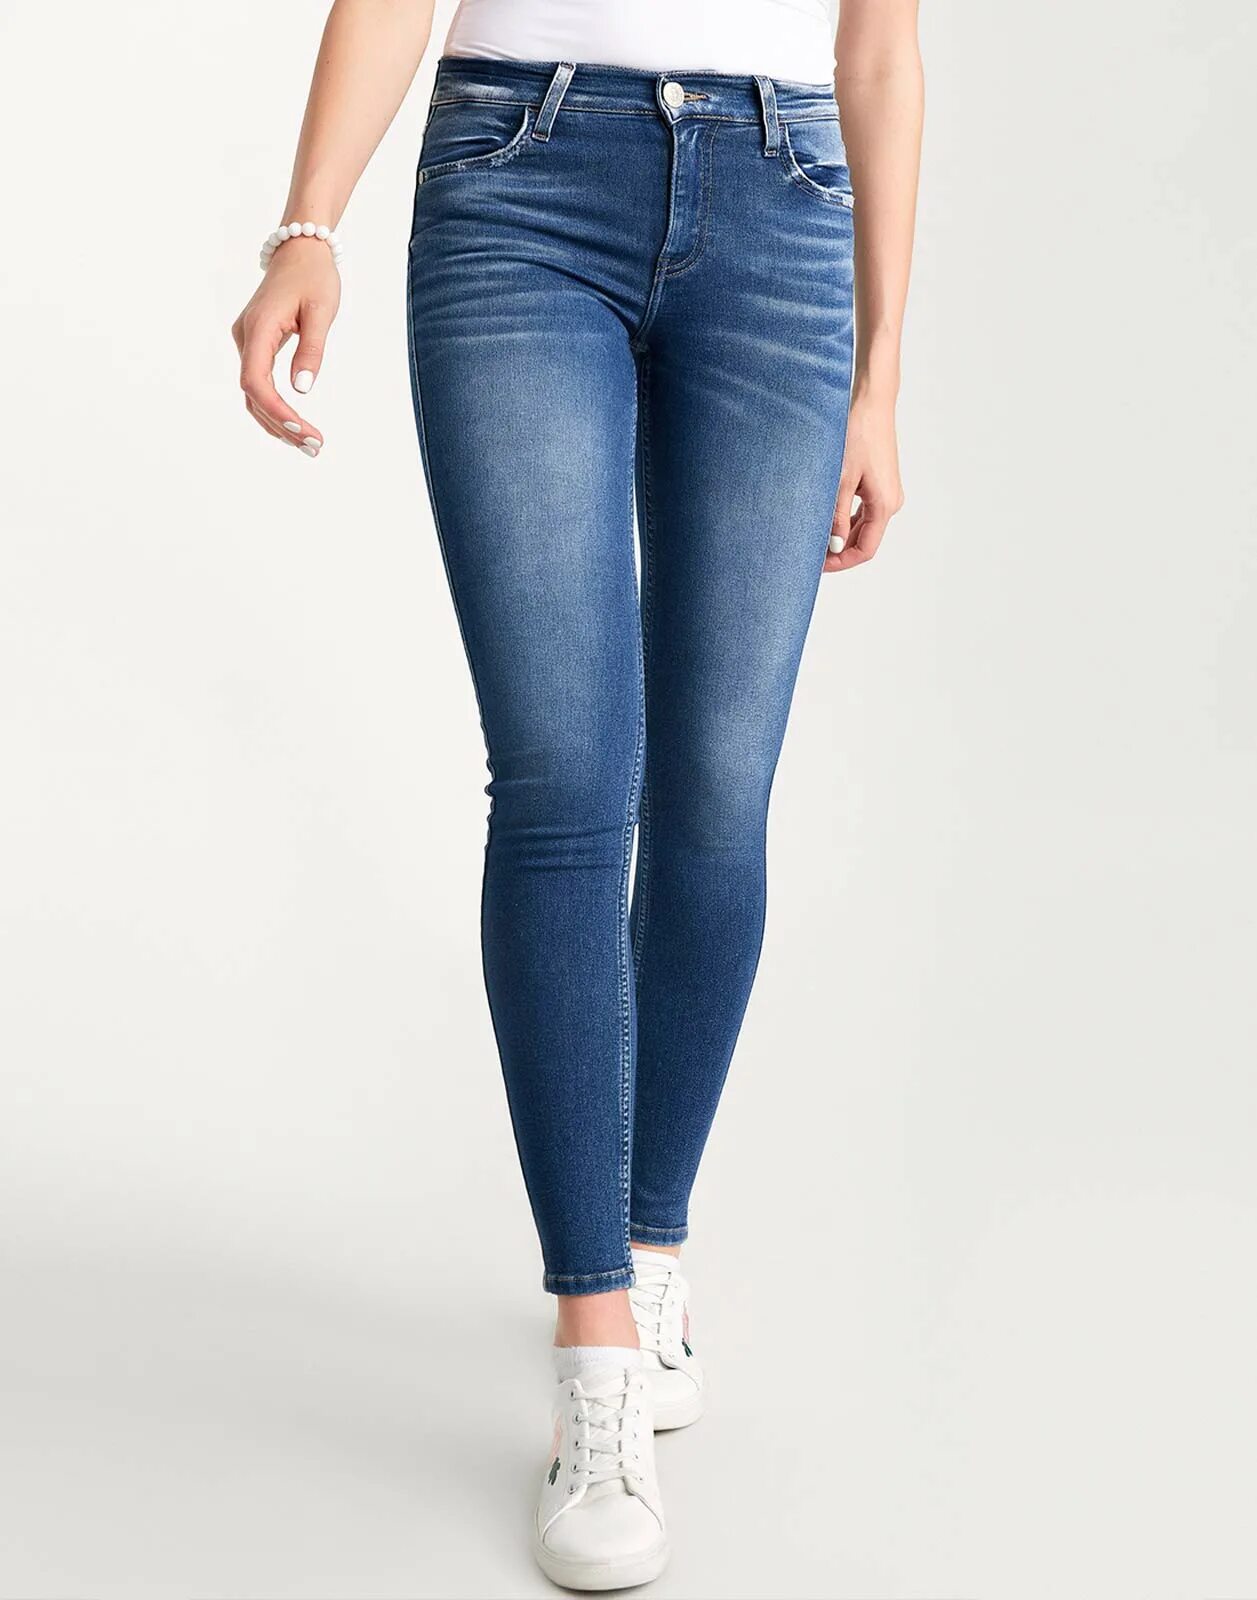 Облегченный джинсы. Обтягивающие джинсы. Облегающие джинсы женские. Обтягивающие джинсы женские. Джинсы в обтяжку женские.